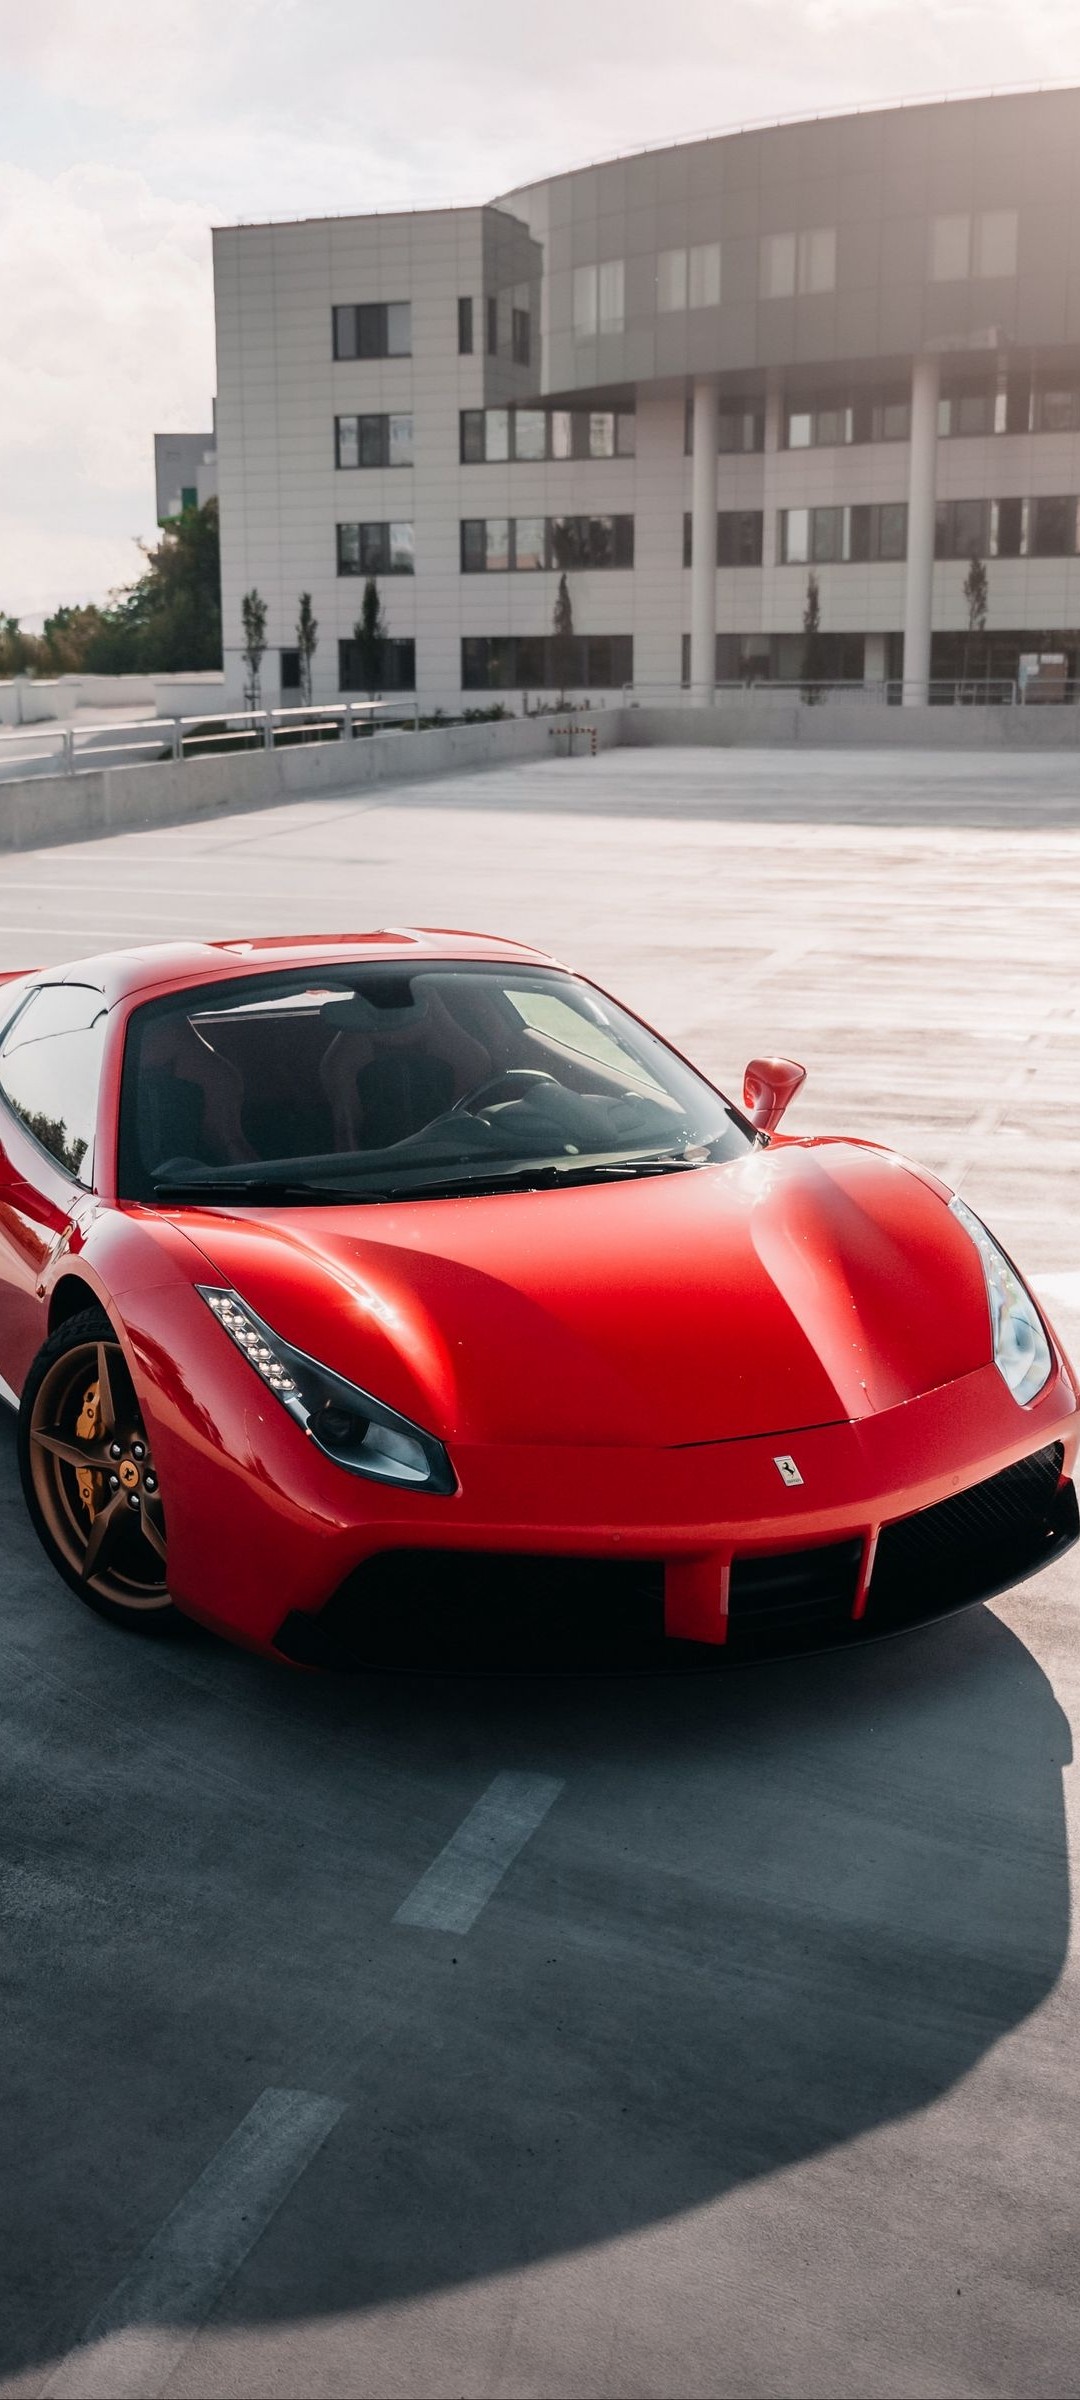 Hình Nền Siêu Xe Ferrari Full HD Tuyệt Đẹp Cho Điện Thoại